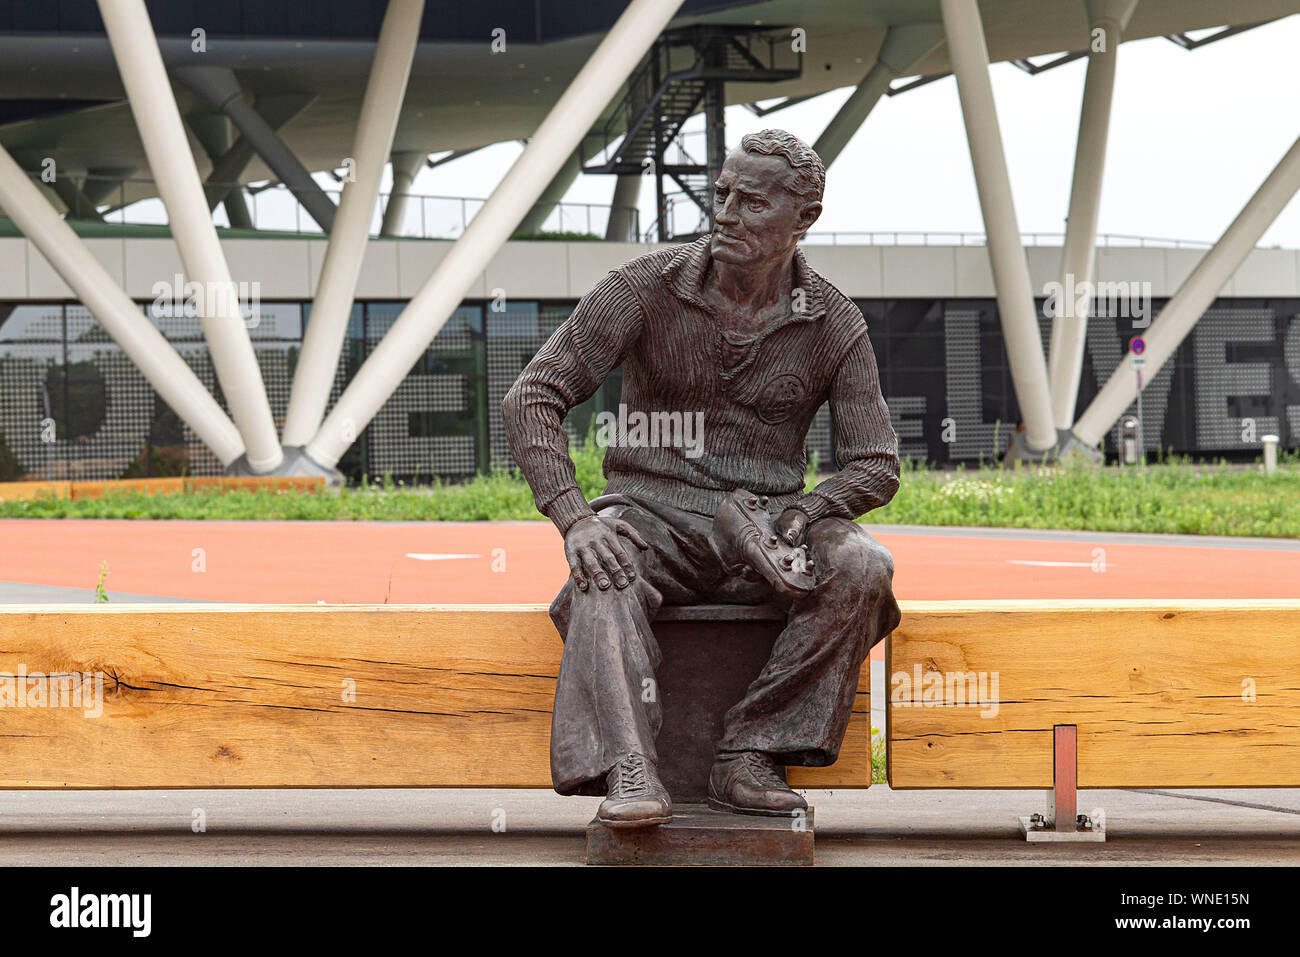 Statue, Denkmal des Firmengründers (Firmengründer) Adi Dassler vor der  Arena; Adidas Arena, das Verwaltungsgebäude der adidas AG, erinnert an eine  Fußball-Arena, Fußball-Stadion, hat eine Größe von 52.000 Quadratmetern und  bietet Platz für